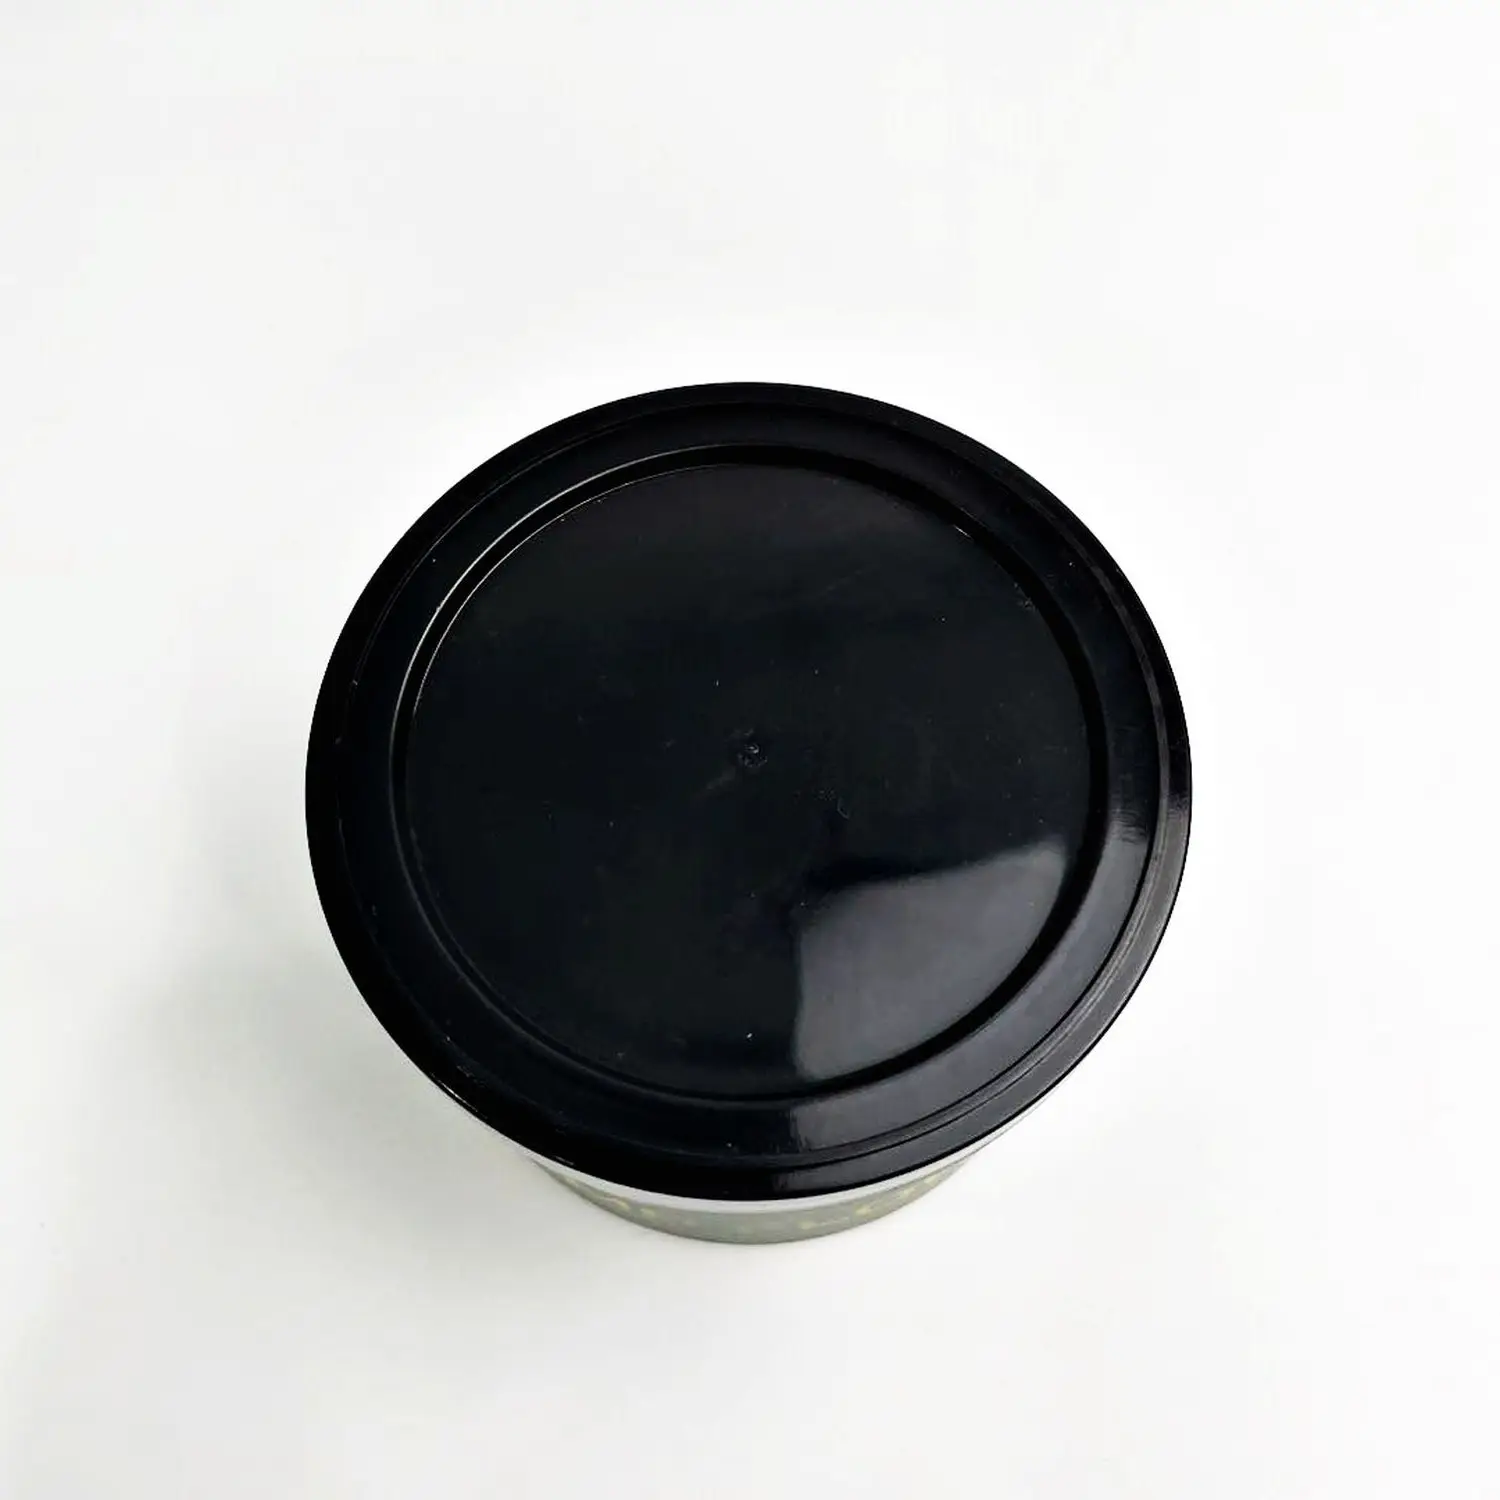 カスタム空の金属食品グレード100mlプレシチンセルフシール3.5gブリキ缶、プラスチック製の透明または黒い蓋付き